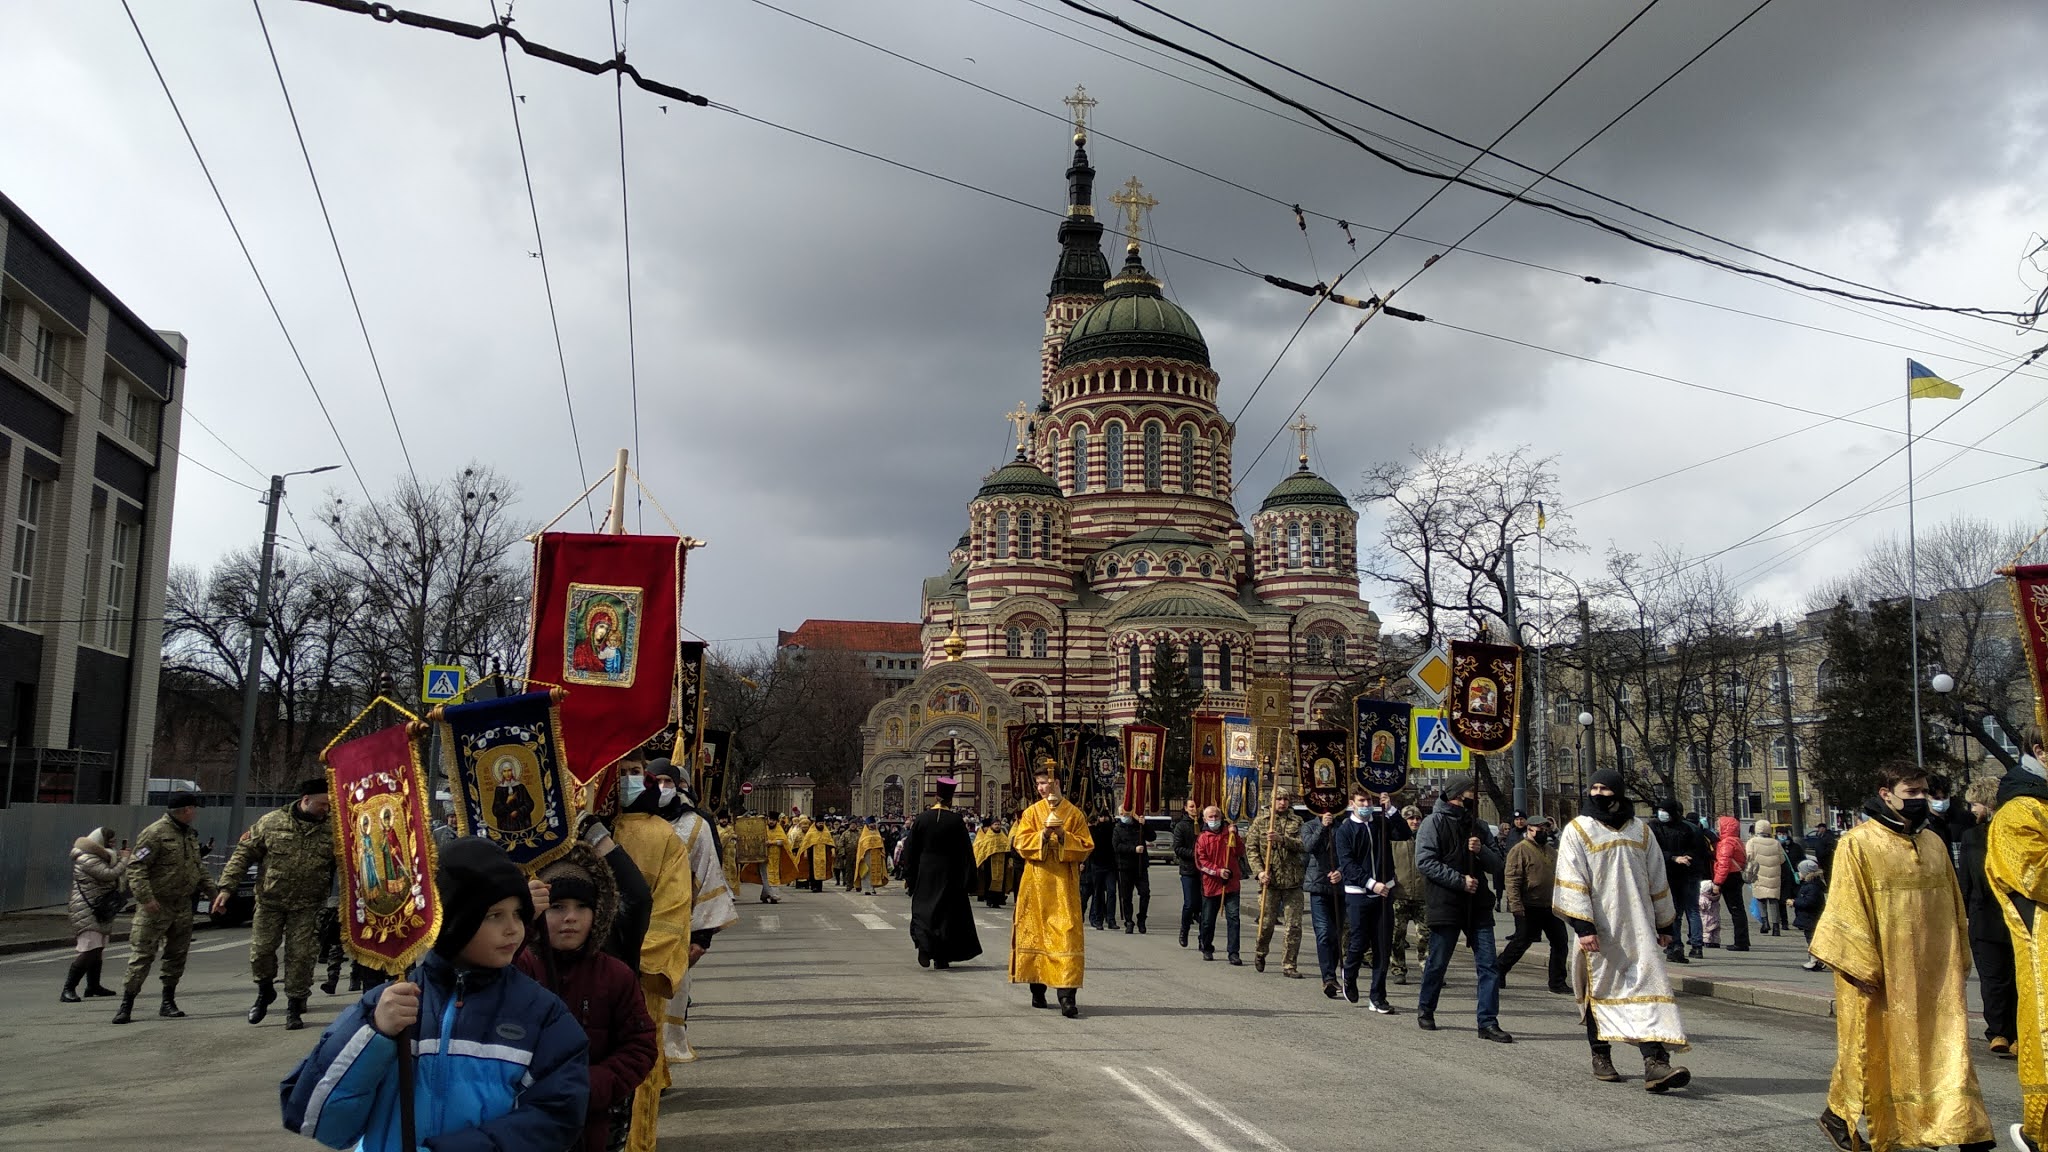 В харькове сейчас есть свет. Православие в Киеве. Крестный ход, молящаяся паства. Крестный ход по грязи. Фото Харькова на сегодняшний день.